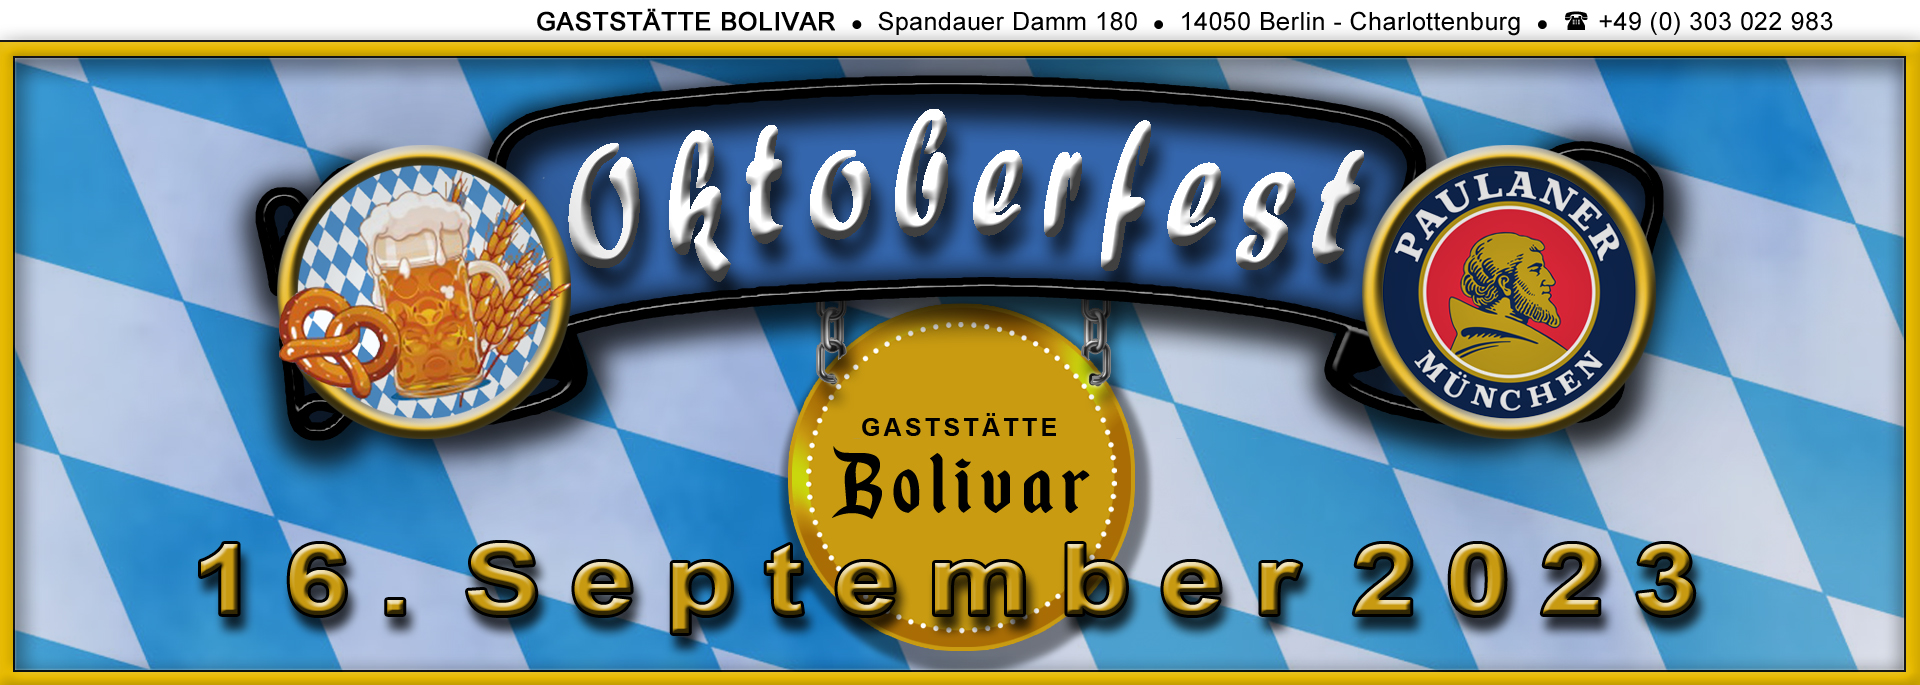 bolivar-berlin-charlottenburg-wilmersdorf-westend-spandau-siemensstadt-oktoberfest-16-09-2023